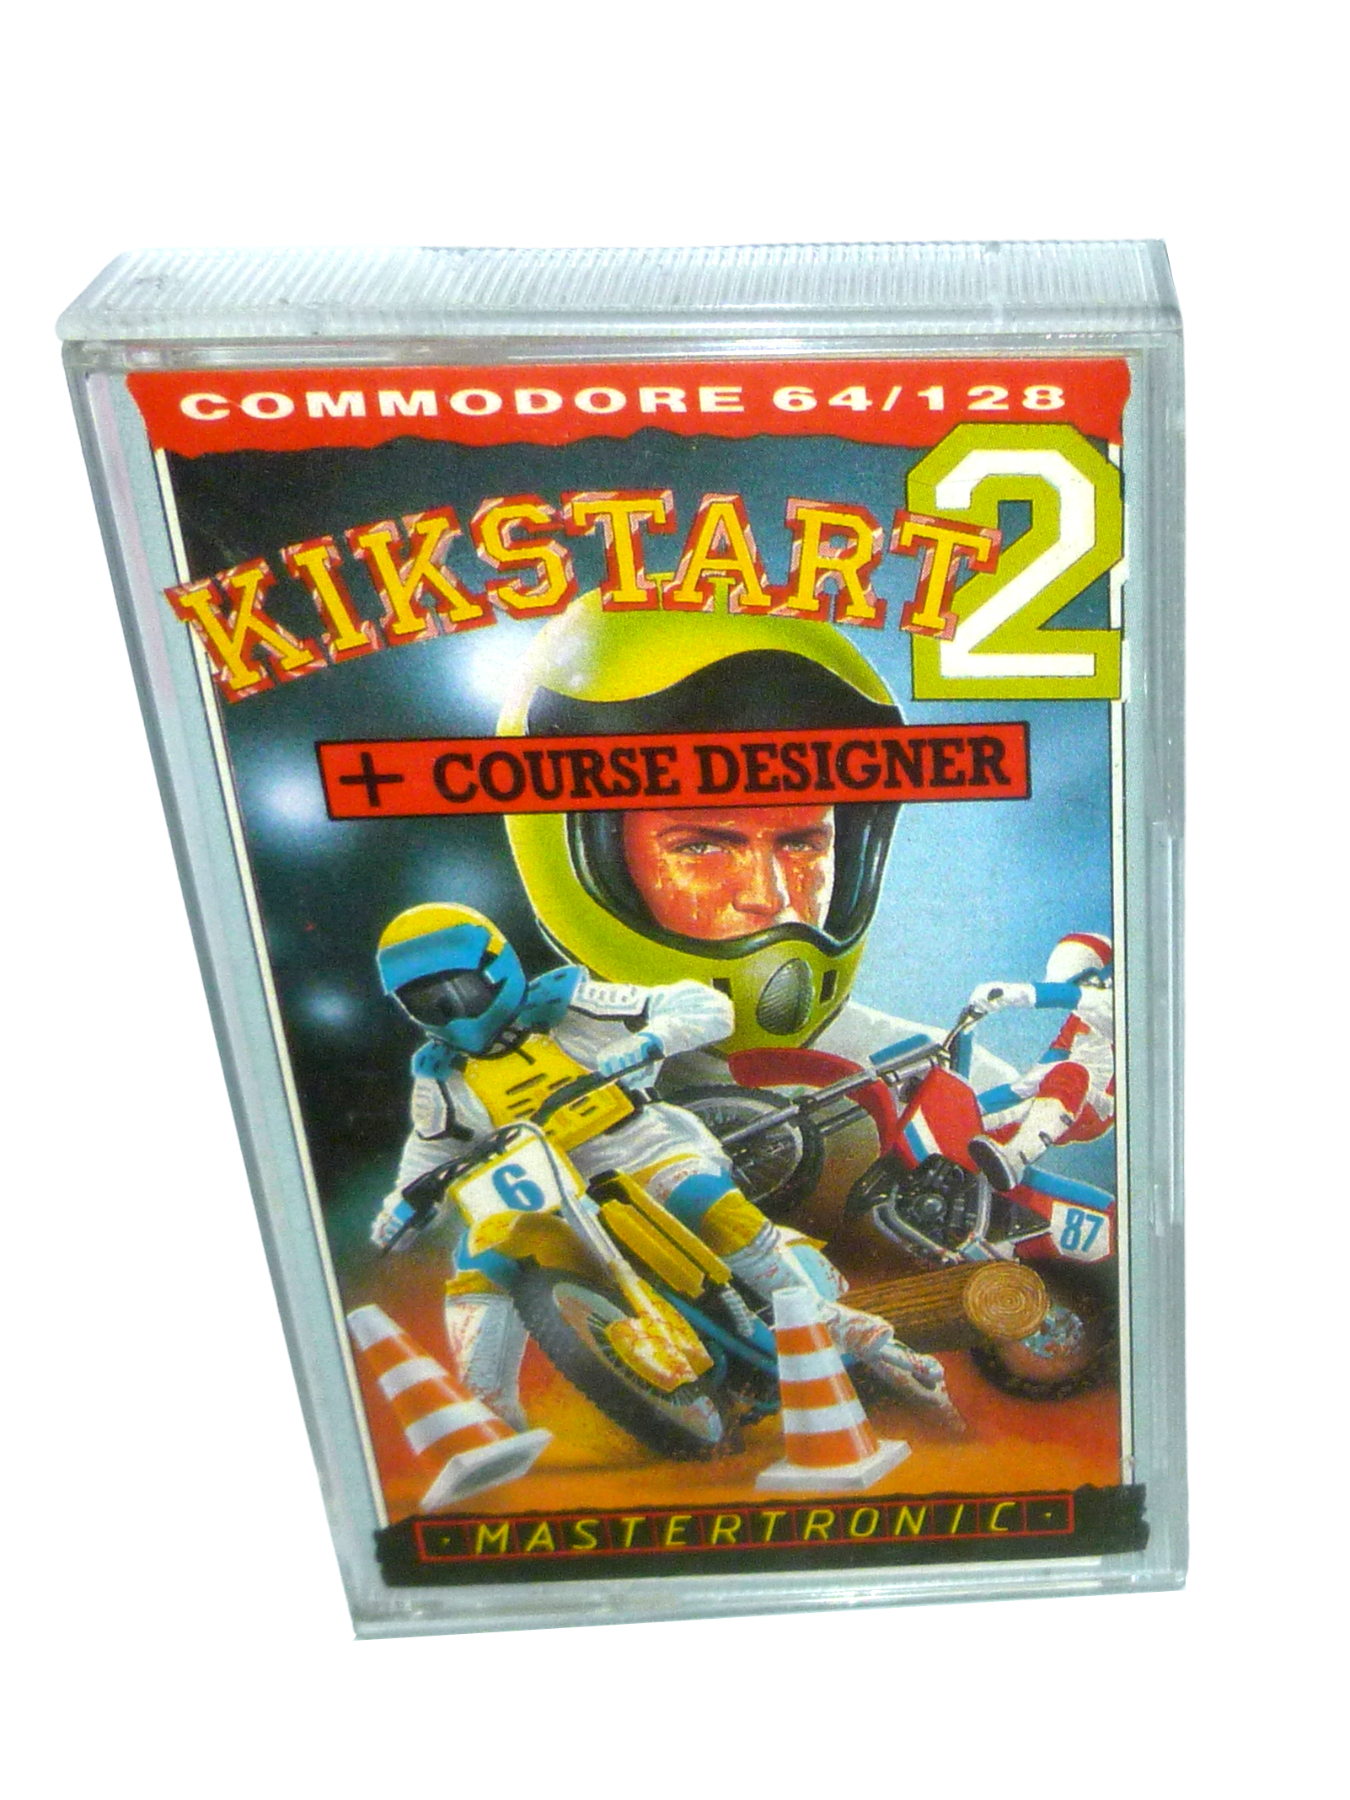 Kikstart 2 - Cassette / Datasette Mastertronic 1987